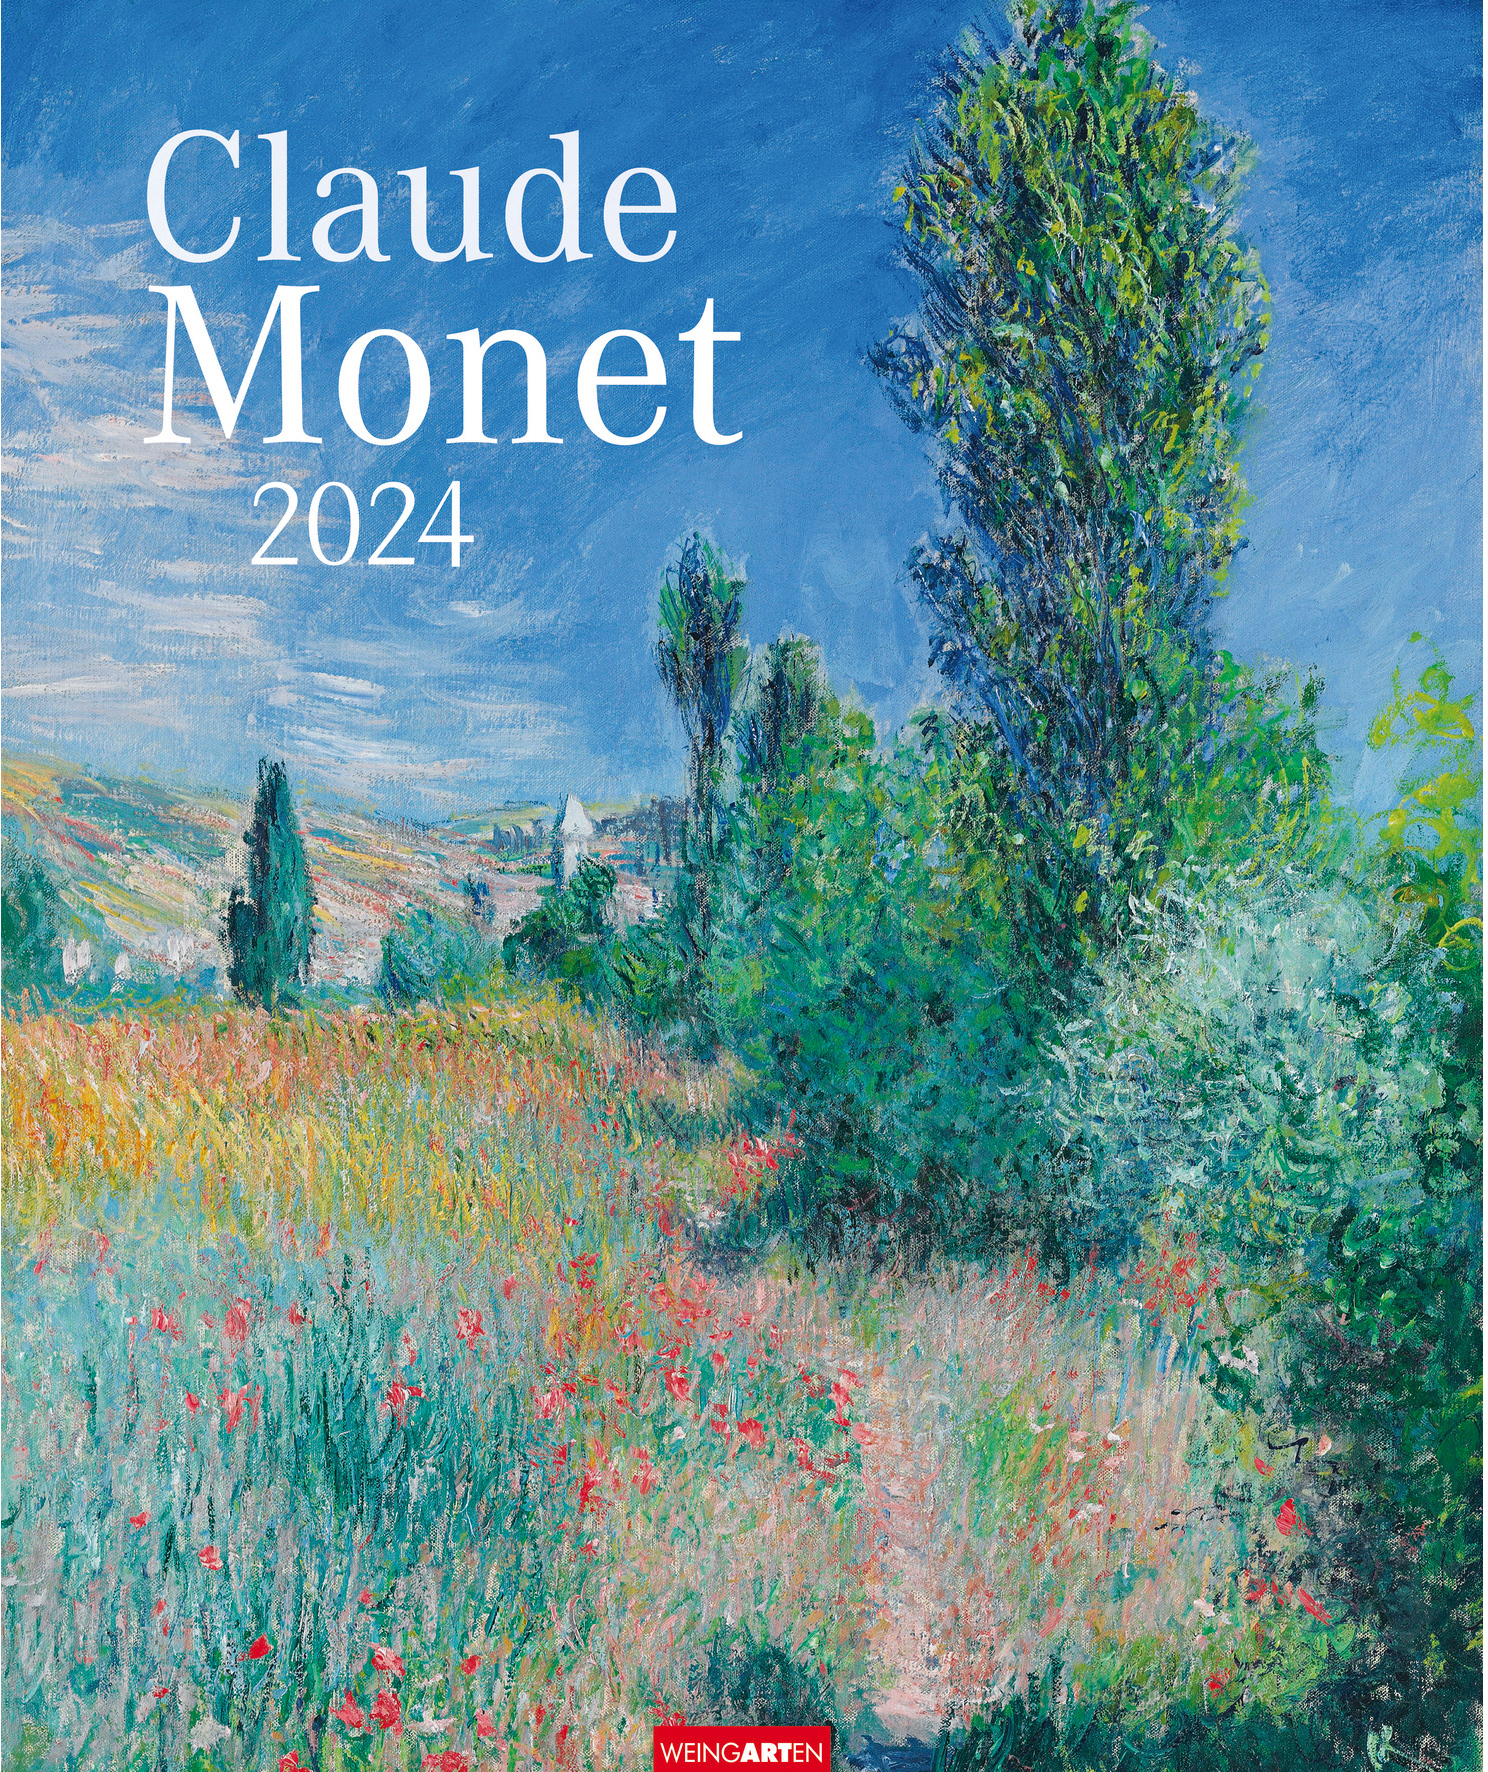 WEINGARTEN Wandkalender Claude Monet 2024 2955900 DE 46x55cm